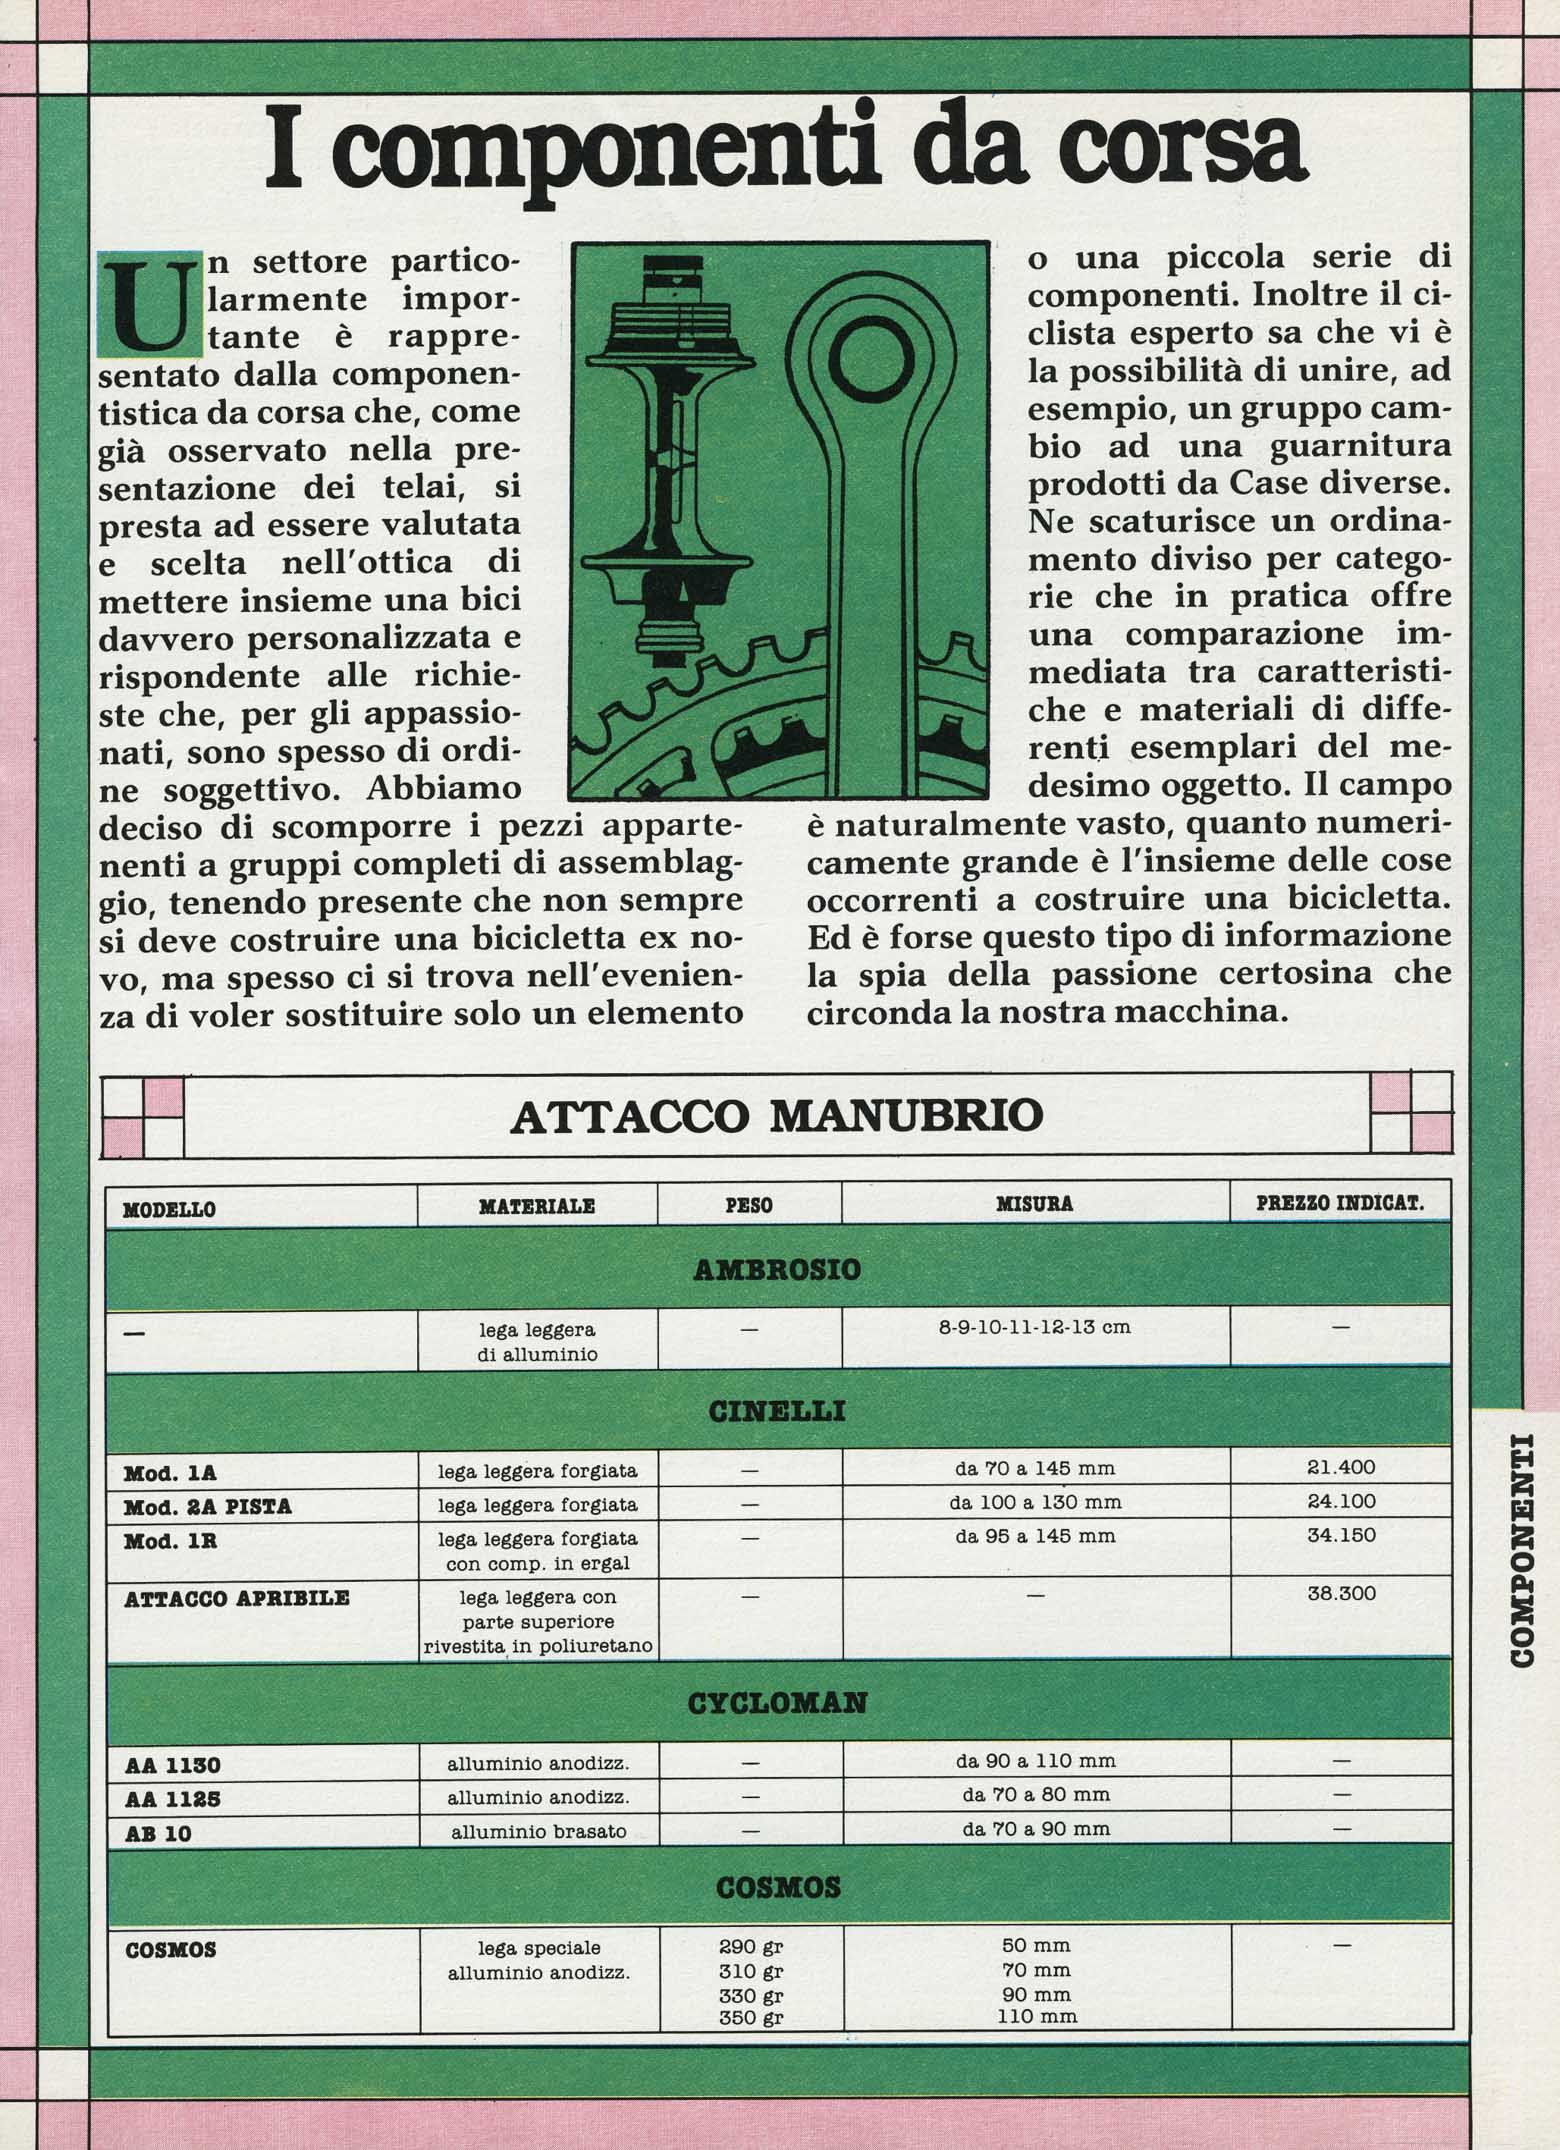 La Bicicletta Guida 1985 November - I componenti da corsa scan 01 main image